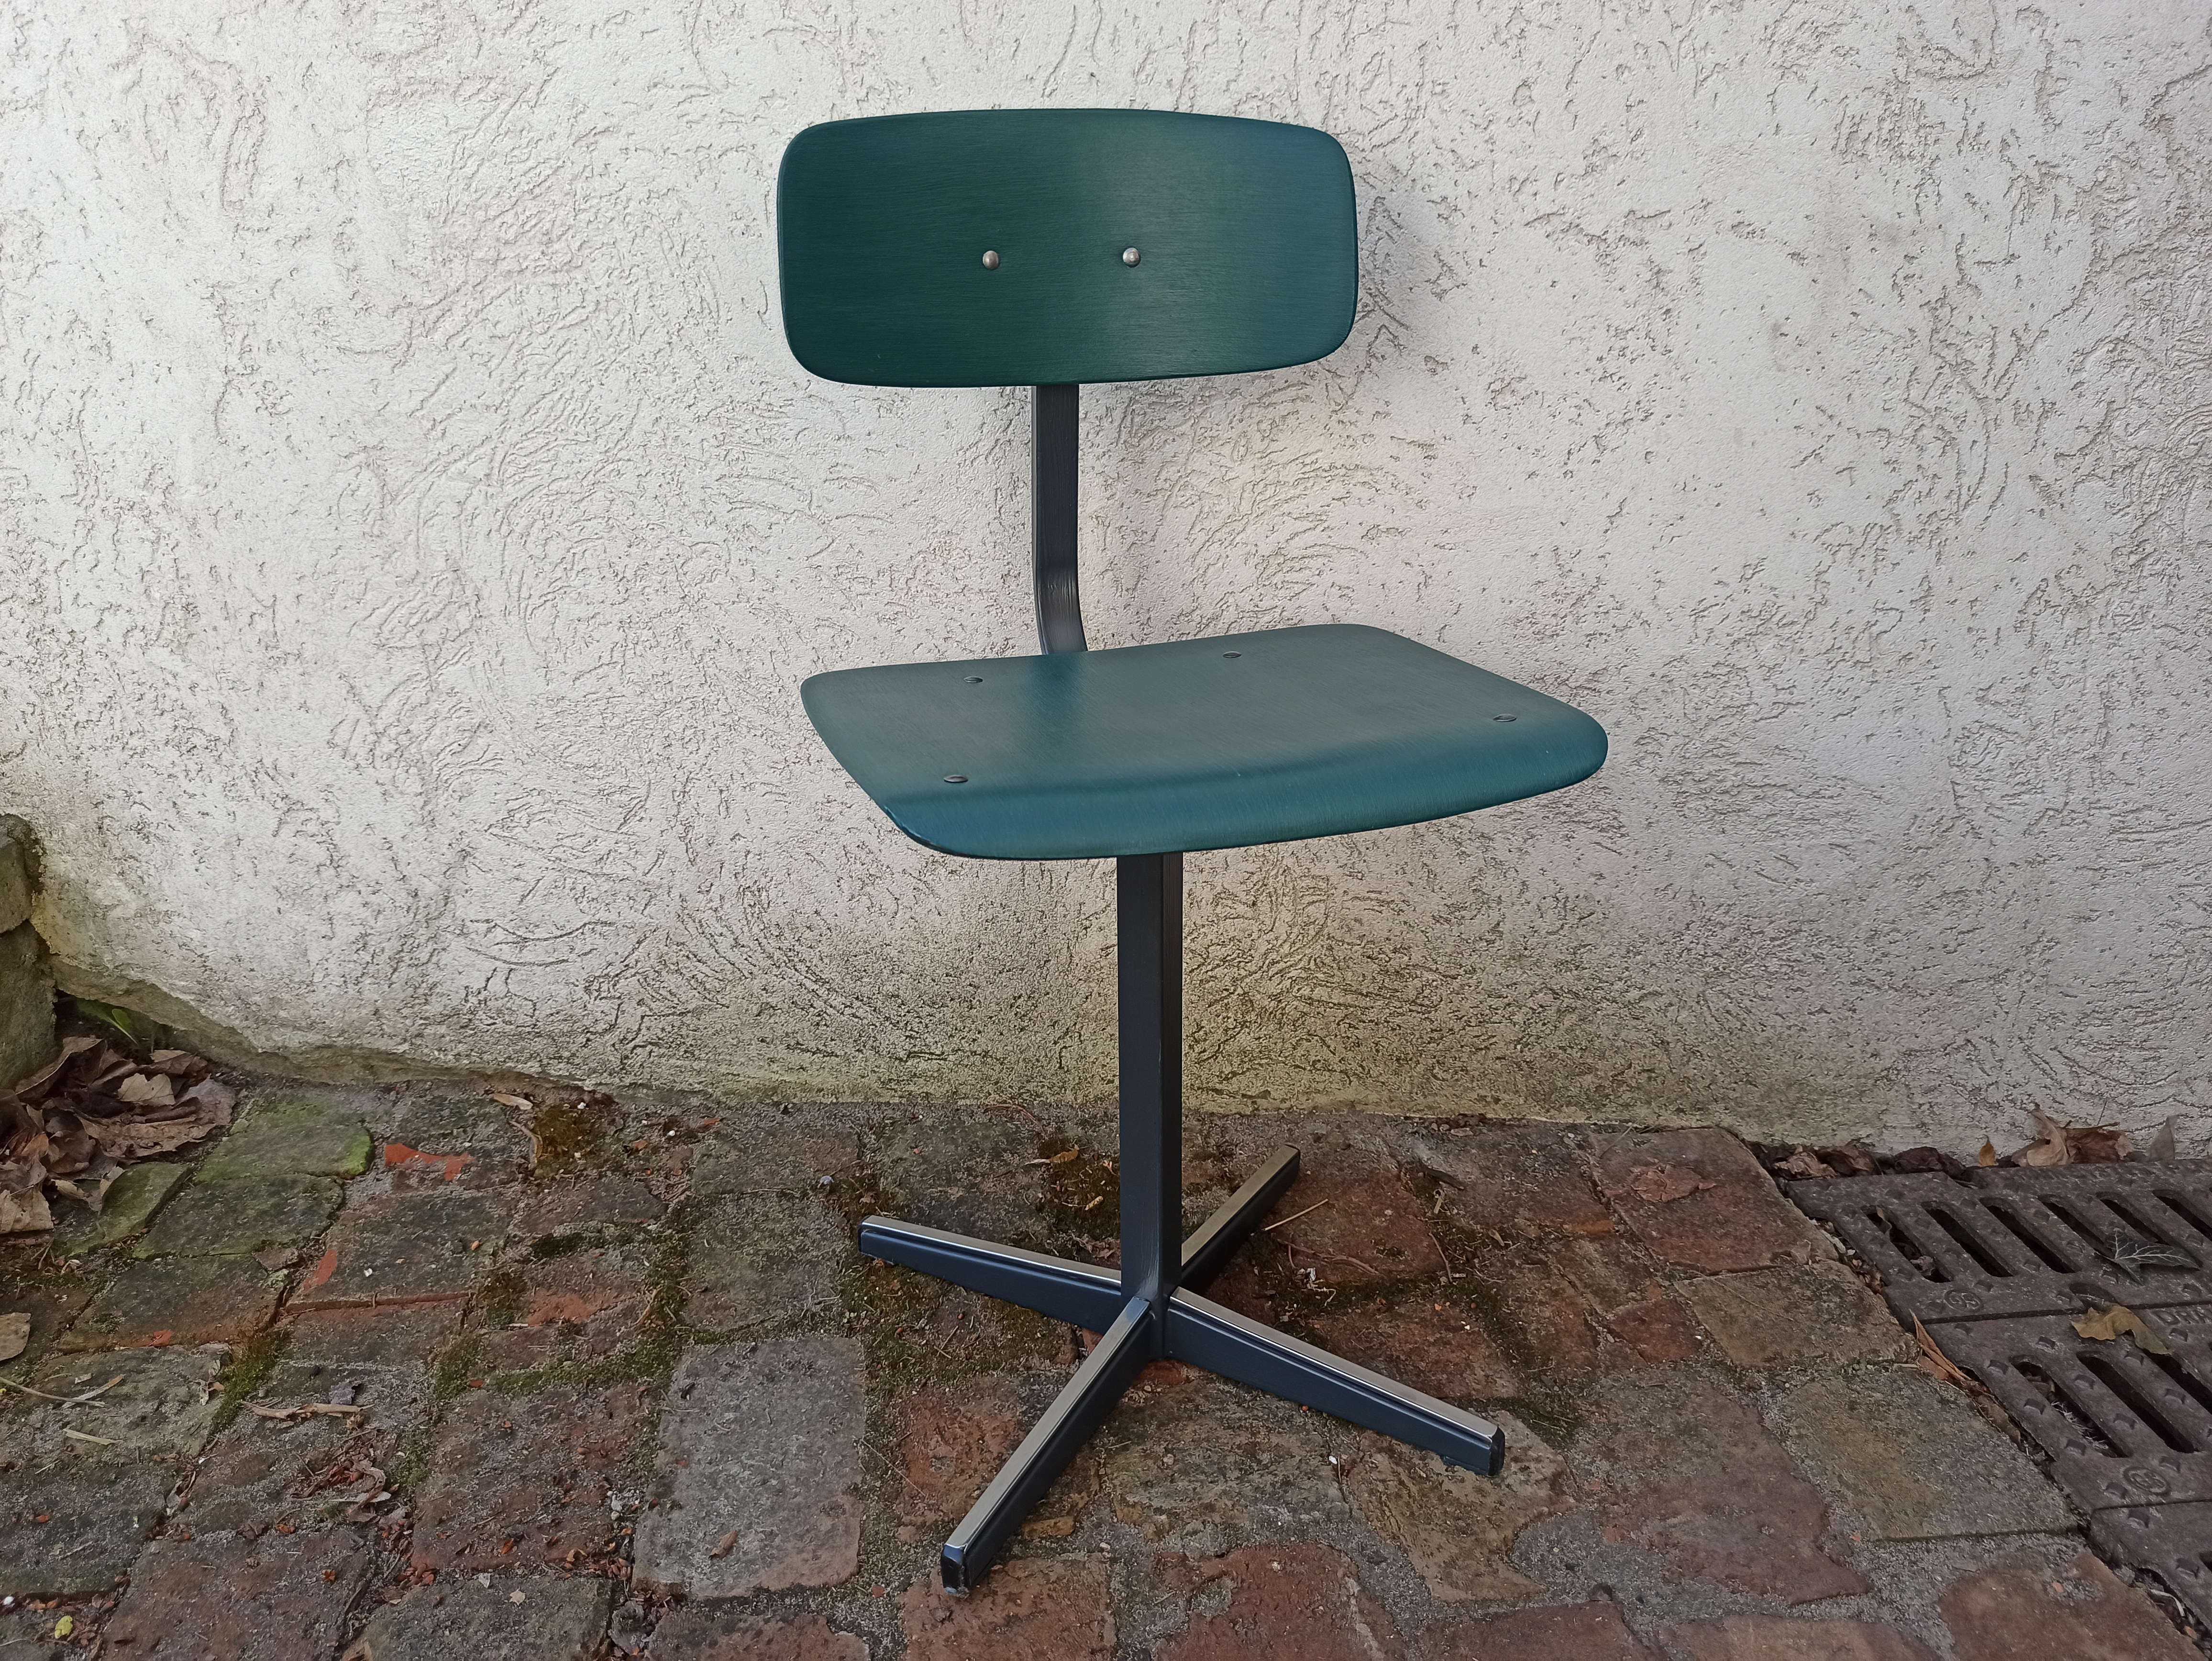 Zielono szmaragdowe krzesełko. Fotel do biurka lub stolika dla nastolatka. Upcykling. Stelaż szary.